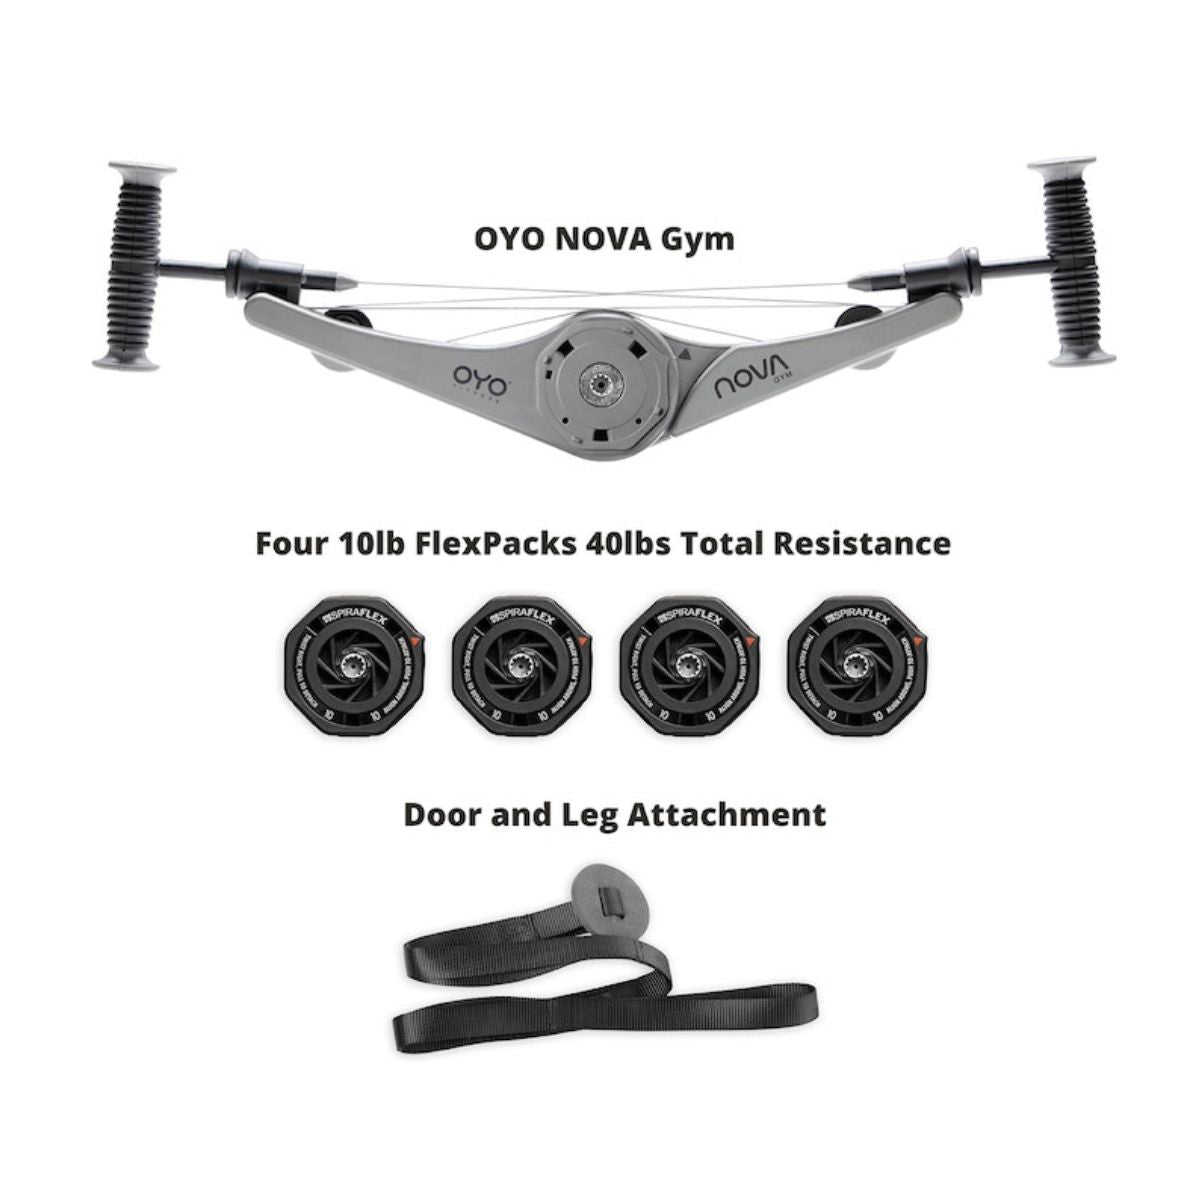 OYO Nova Gym, Black | OYO - Wake Concept Store  